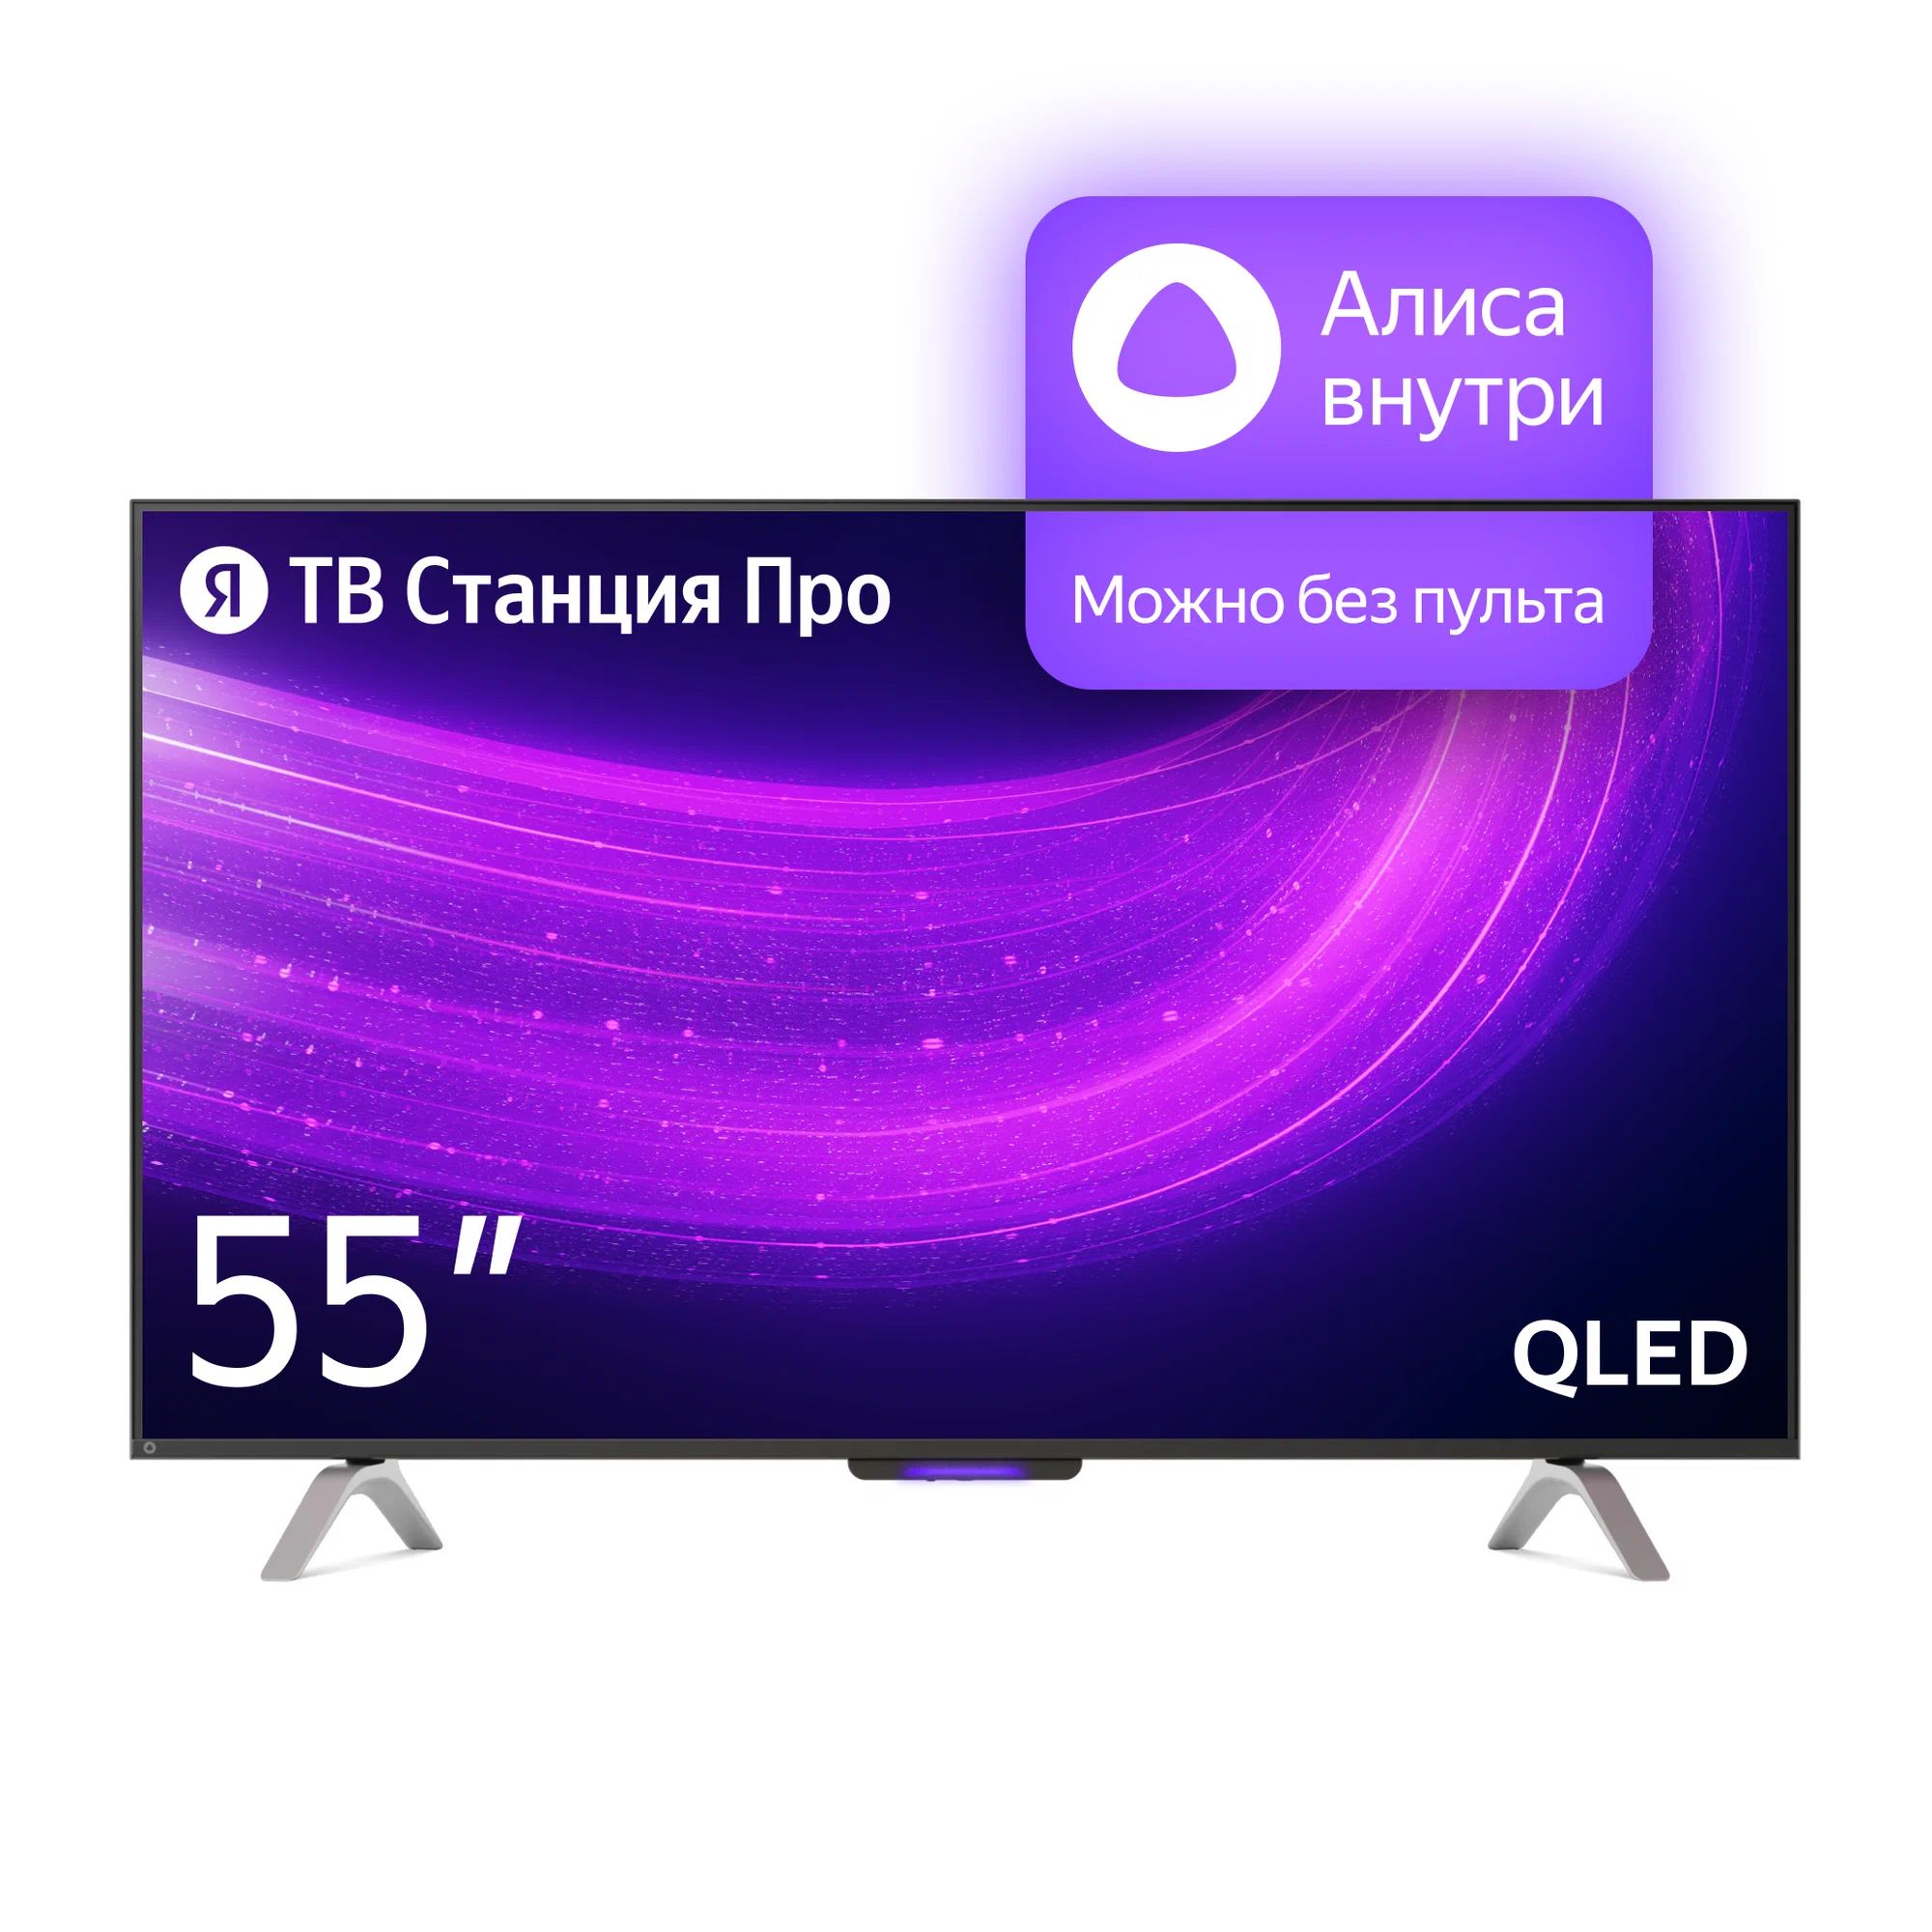 Телевизор Яндекс YNDX-00101 PRO Тв станция с Алисой 55 телевизор яндекс тв станция про 55 yndx 00101